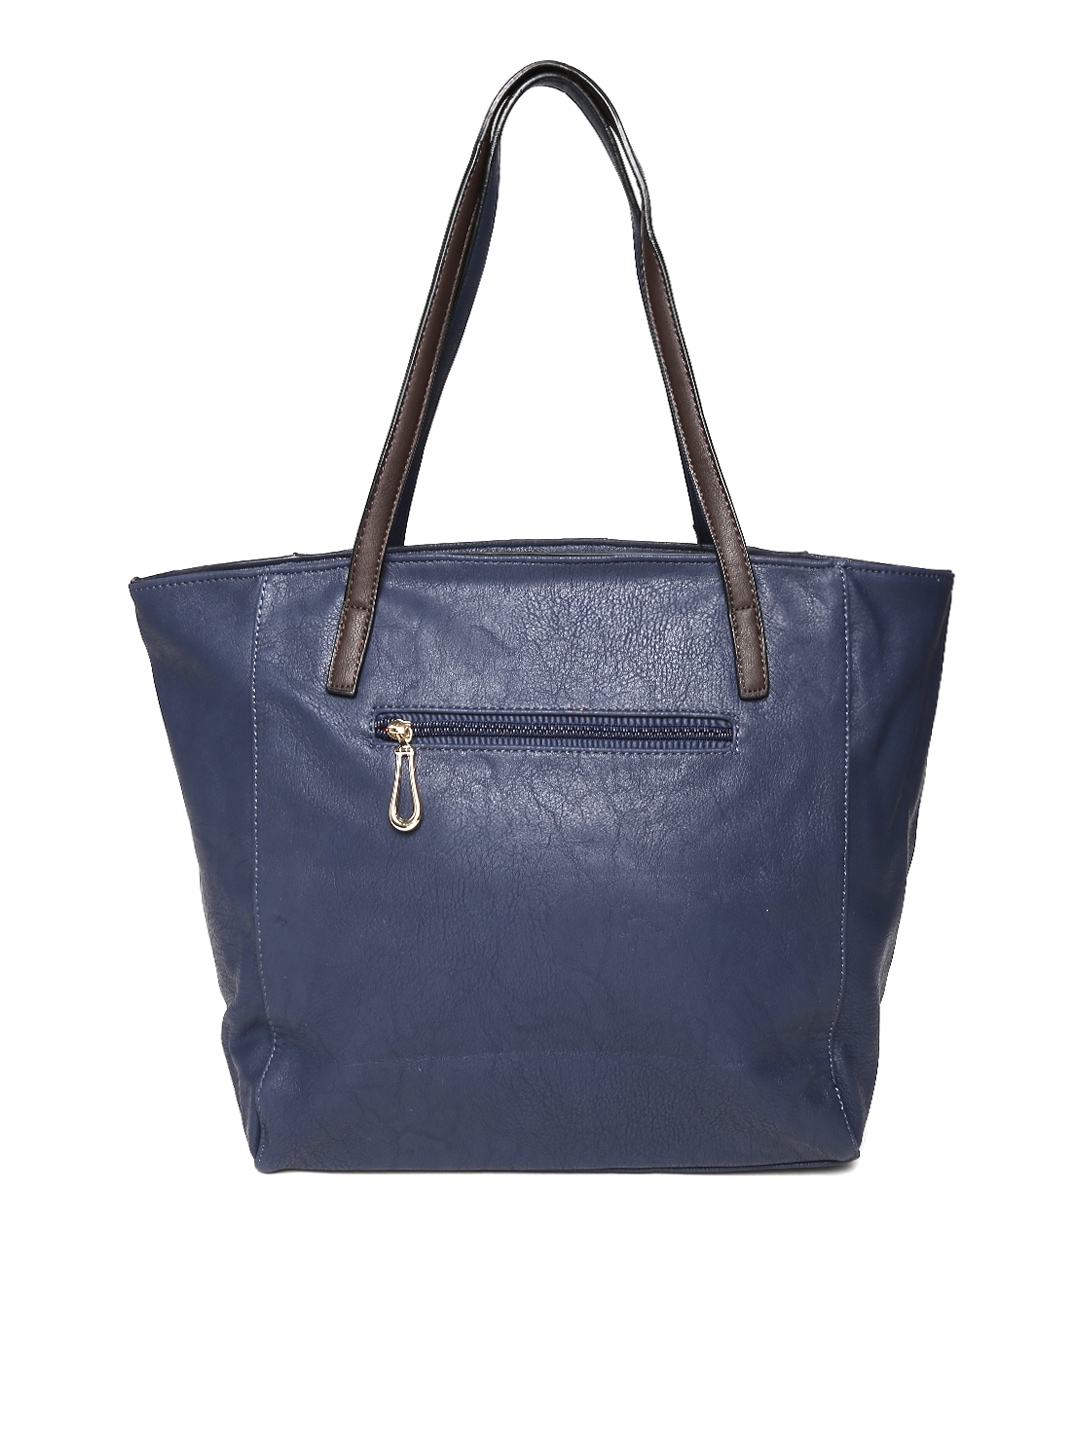 Myntra Hotberries Navy Shoulder Bag 698300 | Buy Myntra Hotberries Handbags at best price online ...